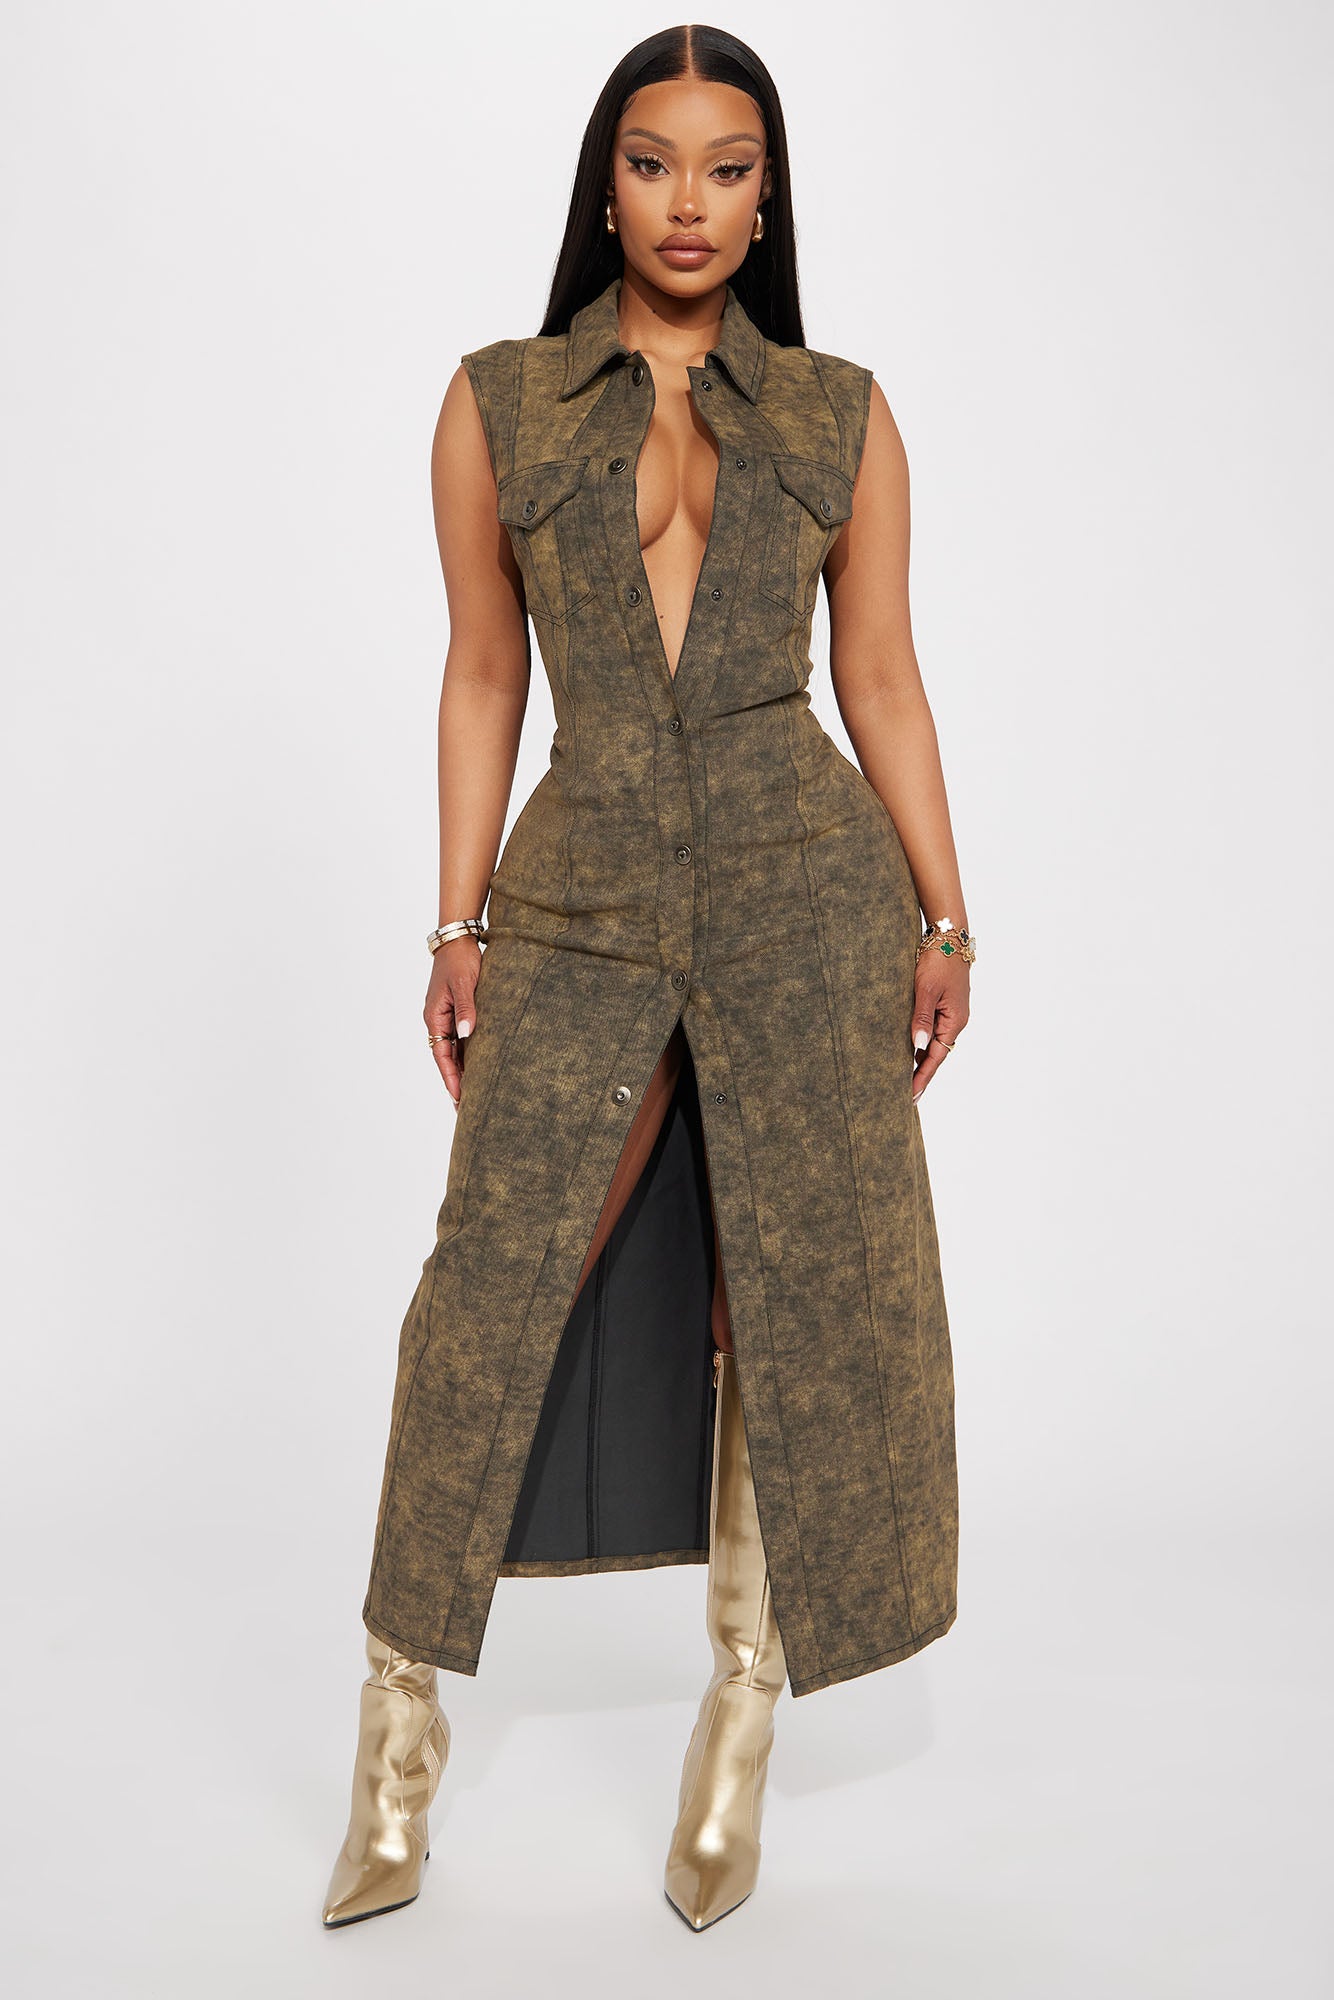 | Fashion Olive Nova, - Nova Dresses Maxi Fashion Denim Dress | Sadie